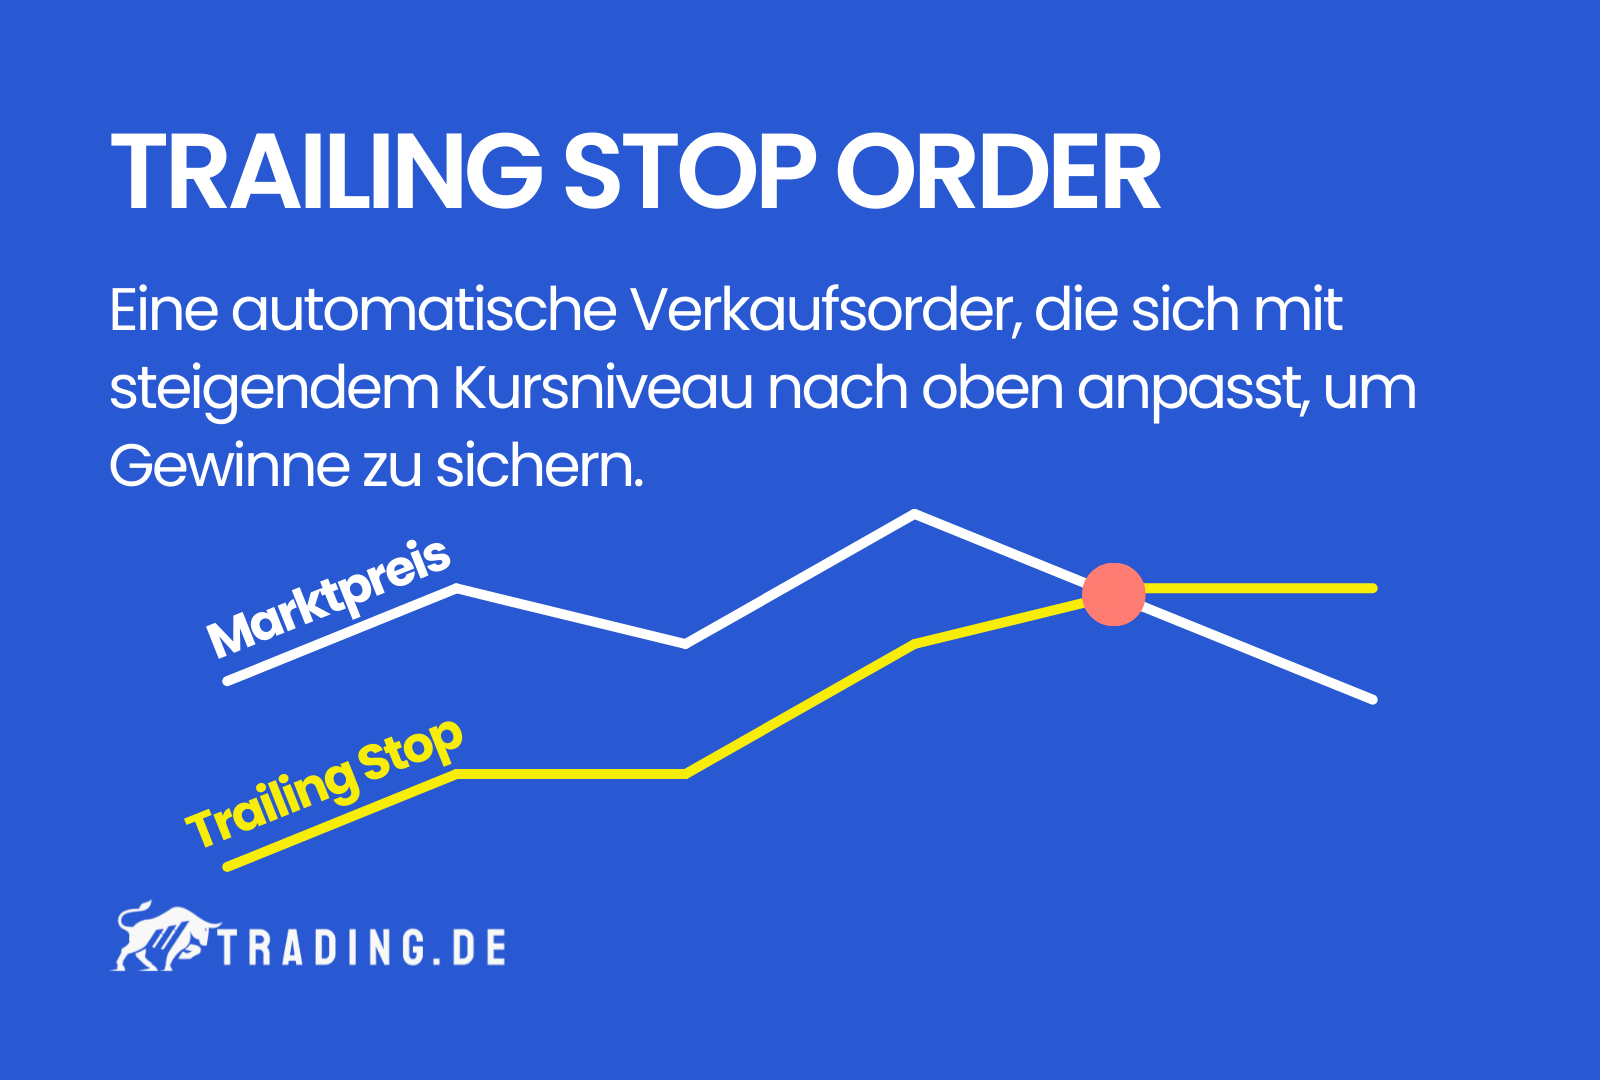 Trailing Stop Order Definition & Erklärung